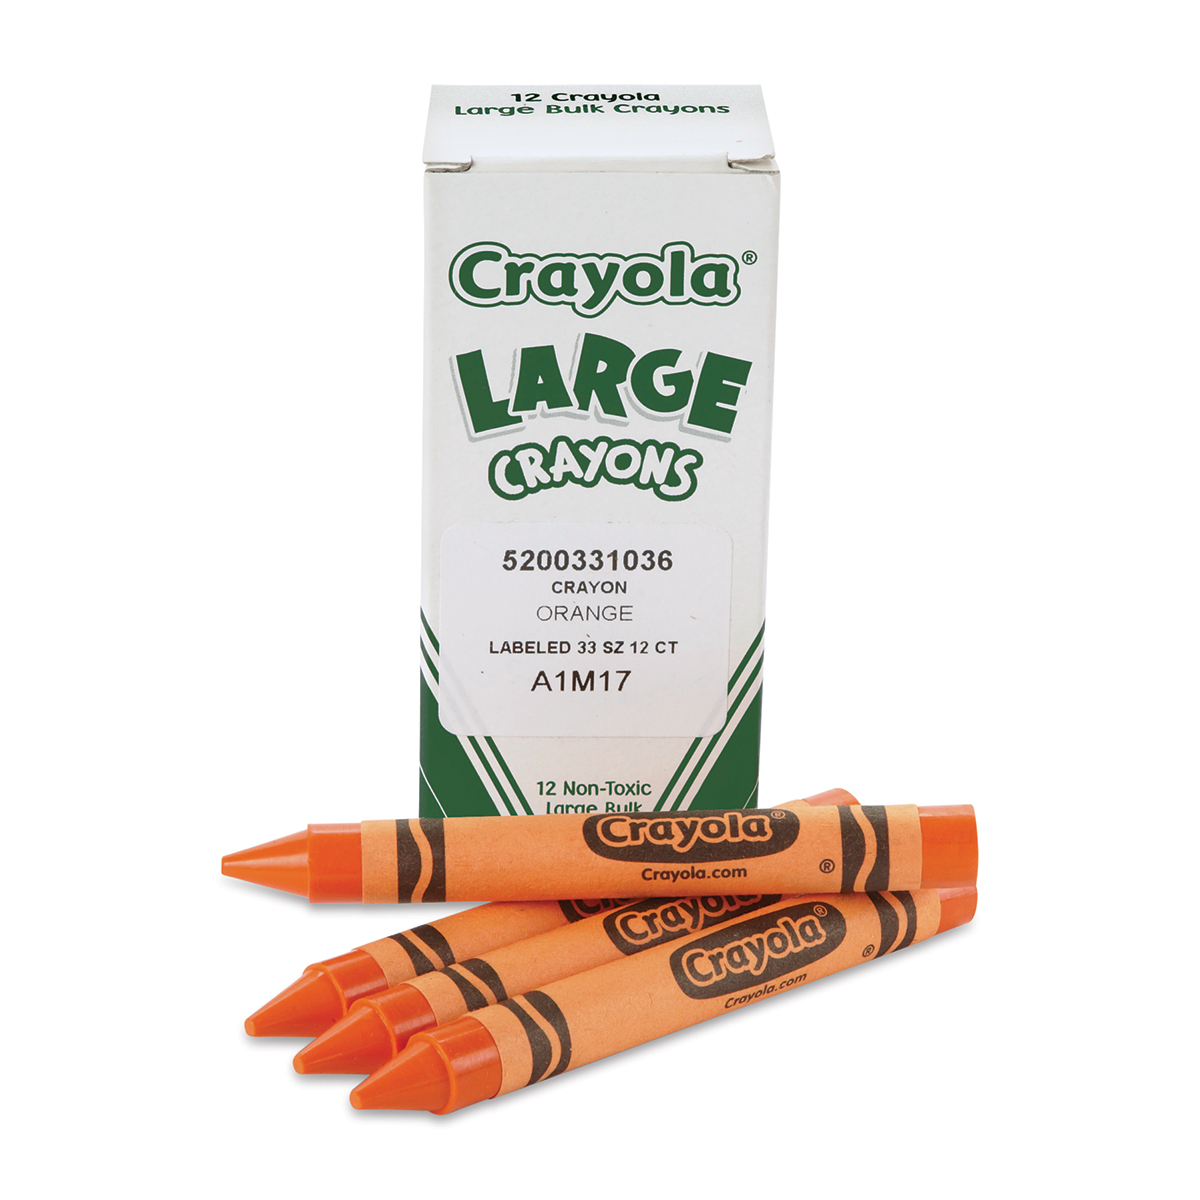 Crayola Large Crayons, 12 Pack, Orange (52-0033-036)